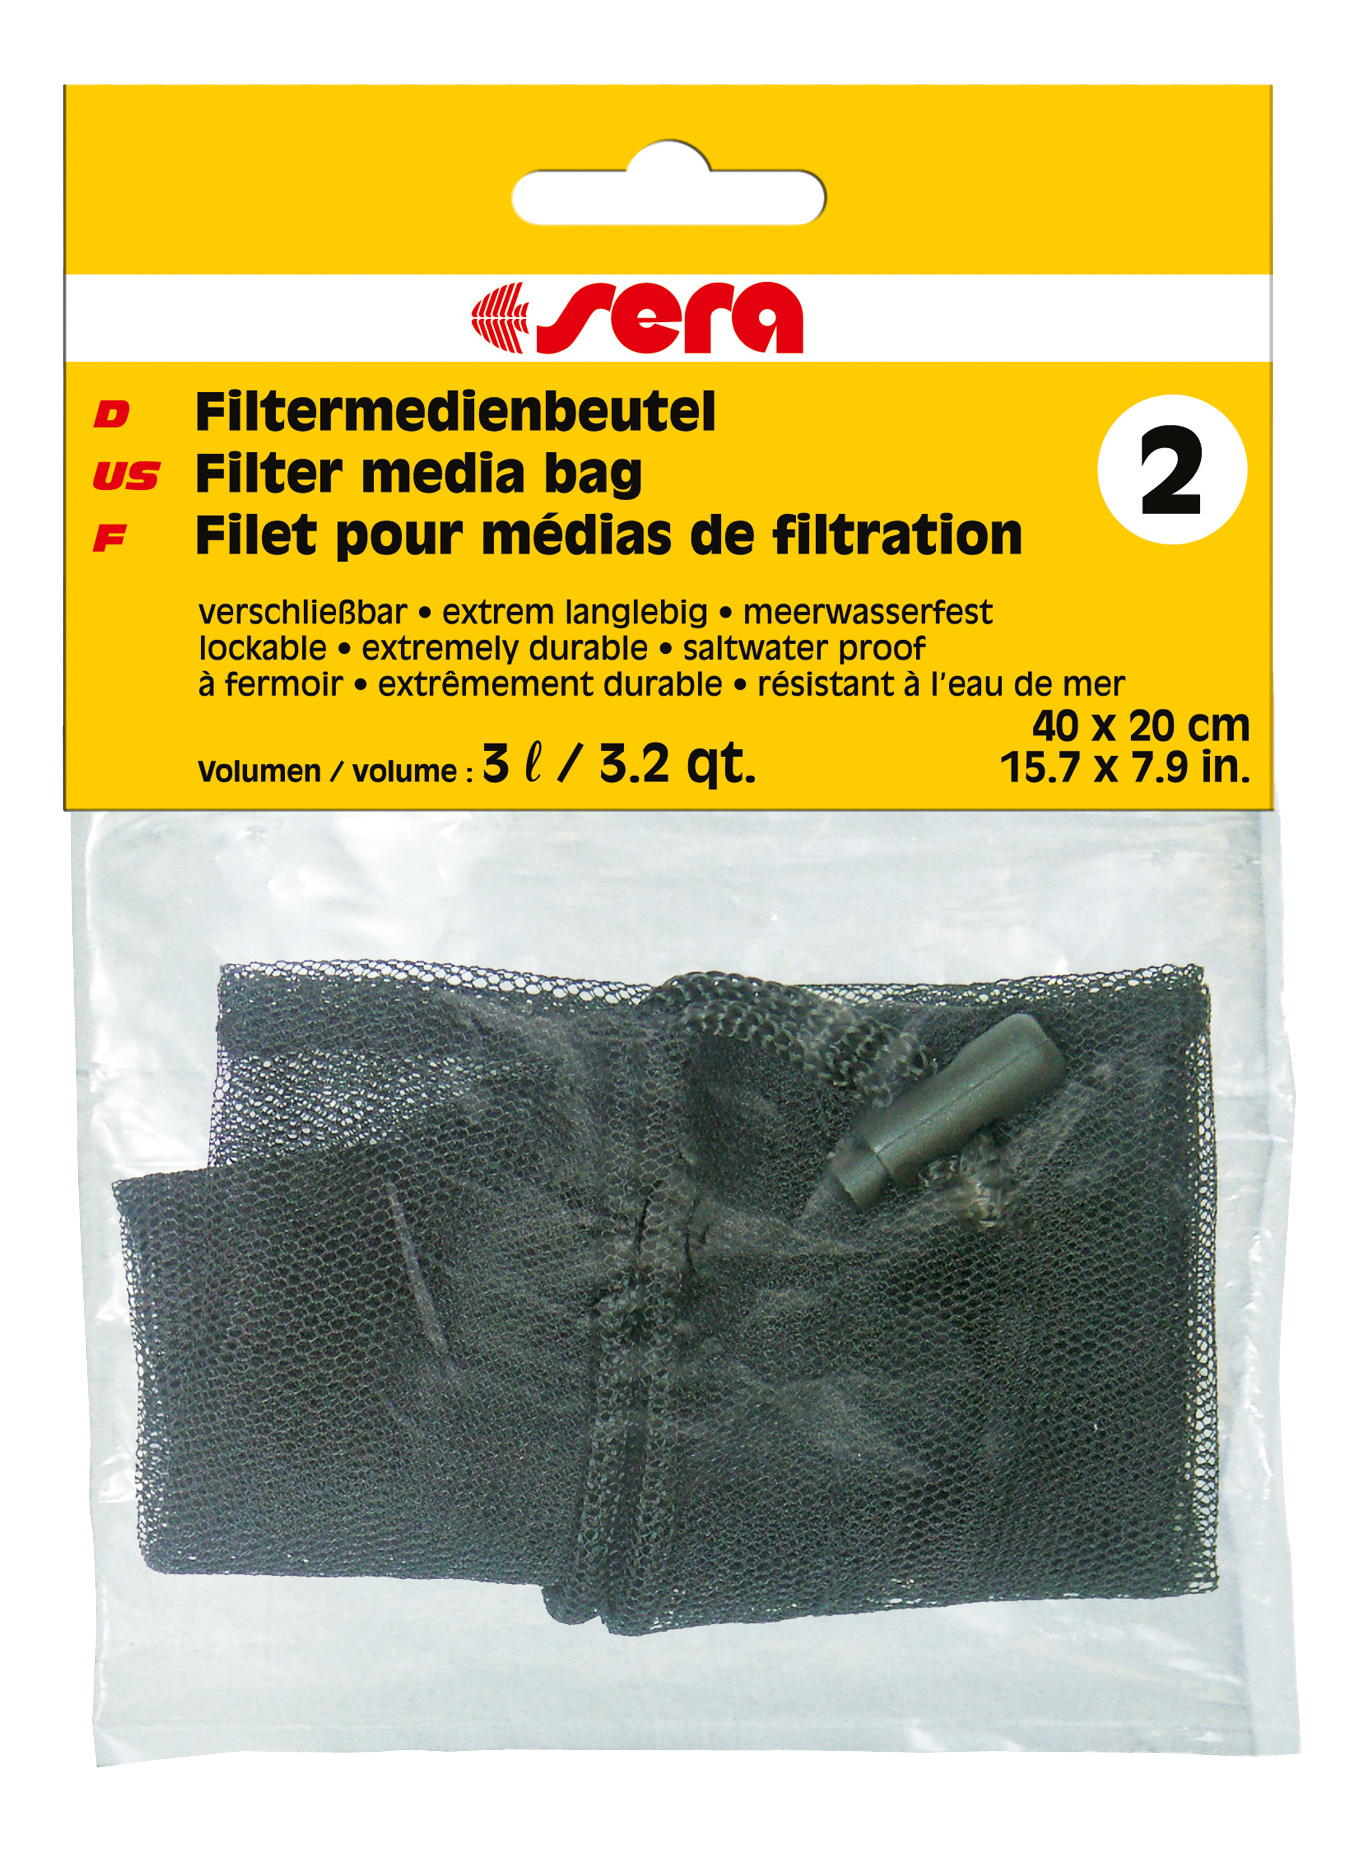 Мешок для фильтрующих материалов Sera №2 для фильтров, универсальный